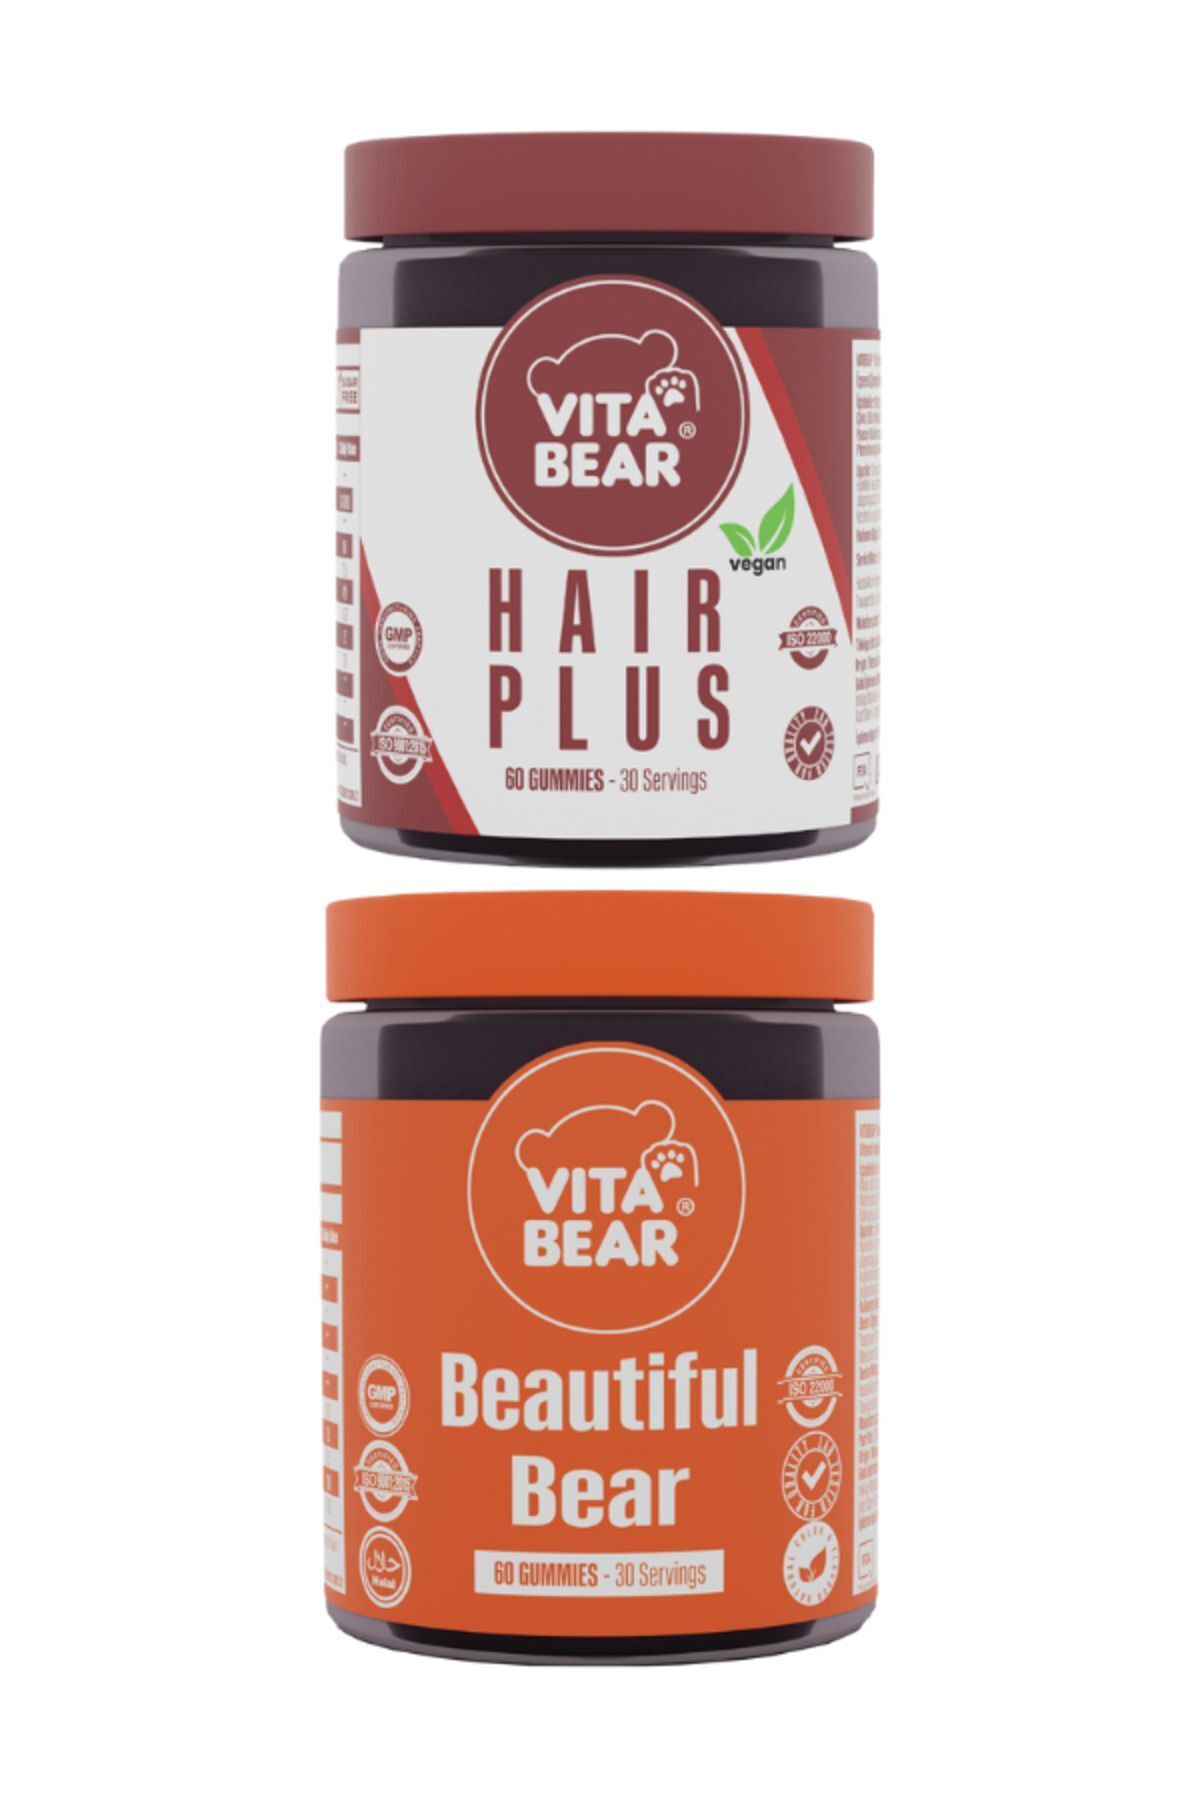 Vita Bear Hair Plus Vegan Saç Vitamini & Vita Bear Cilt Vitamini